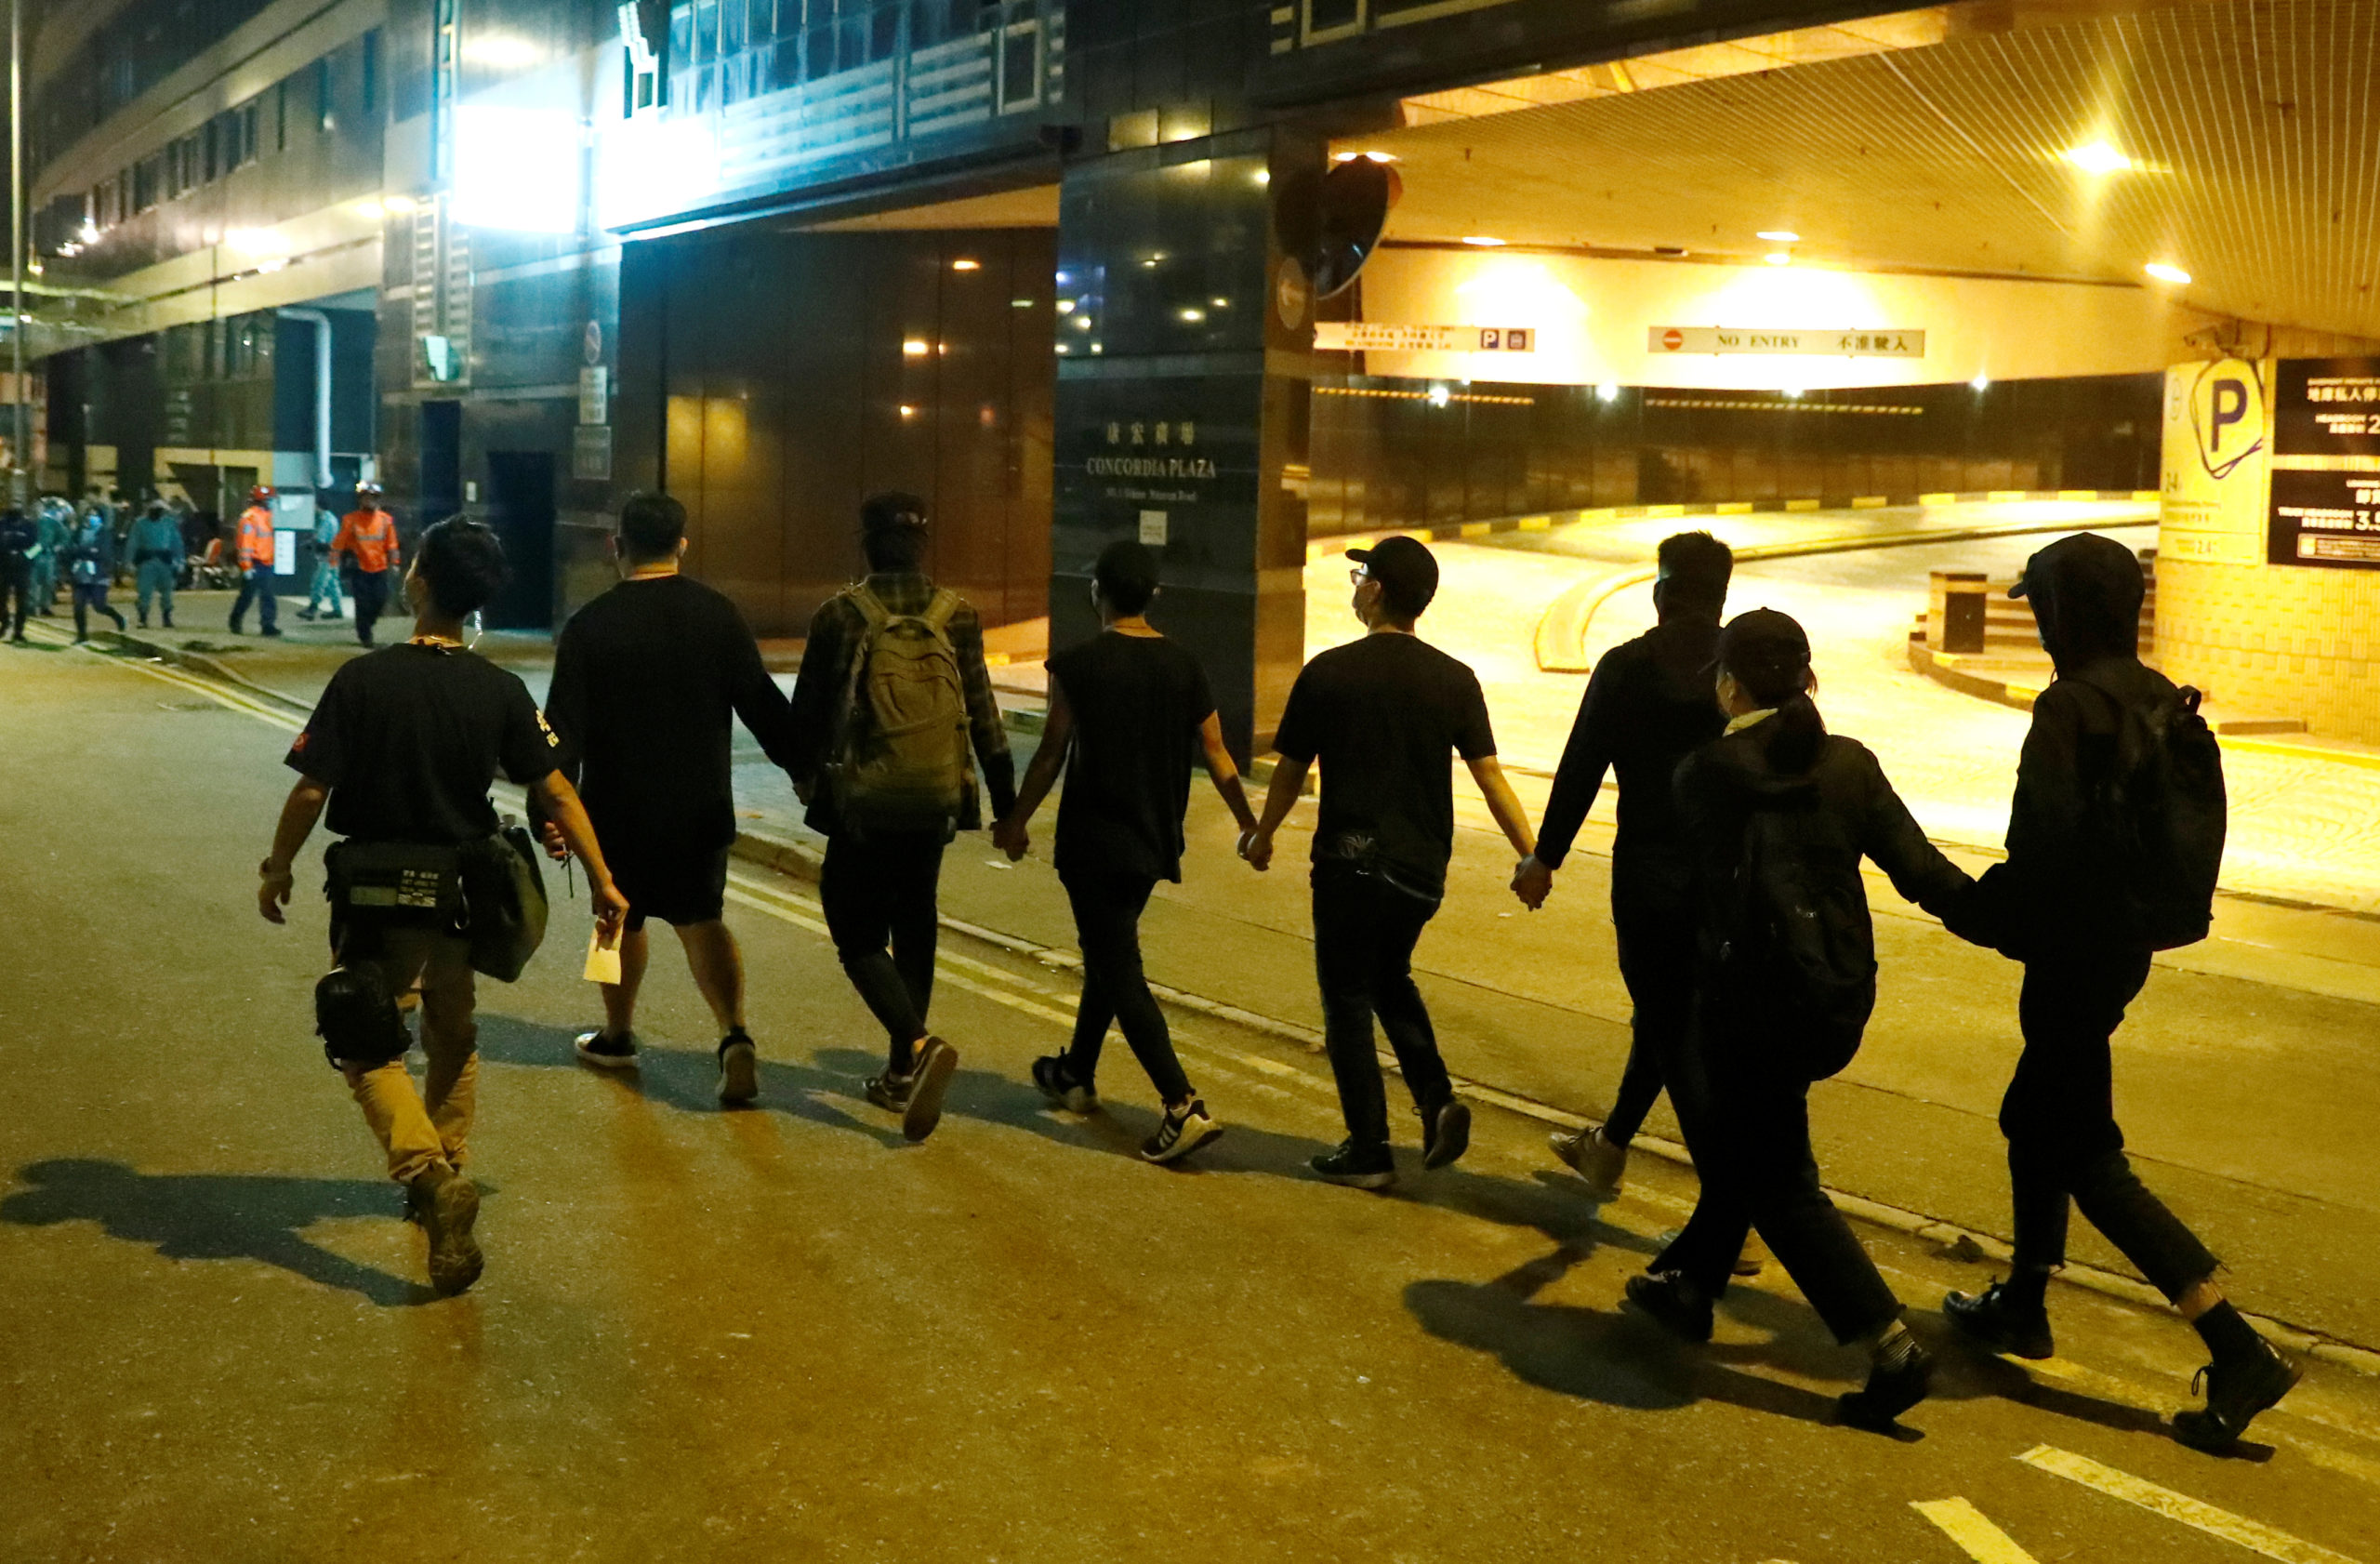 Au moins huit manifestants pro-démocratie qui étaient retranchés depuis plusieurs jours dans un campus universitaire de Hong Kong se sont rendus vendredi matin à la police, tandis que d'autres contestataires cherchaient désespérément une issue pour prendre à défaut le dispositif policier autour du lieu. /Photo prise le 21 novembre 2019/REUTERS/Thomas Peter